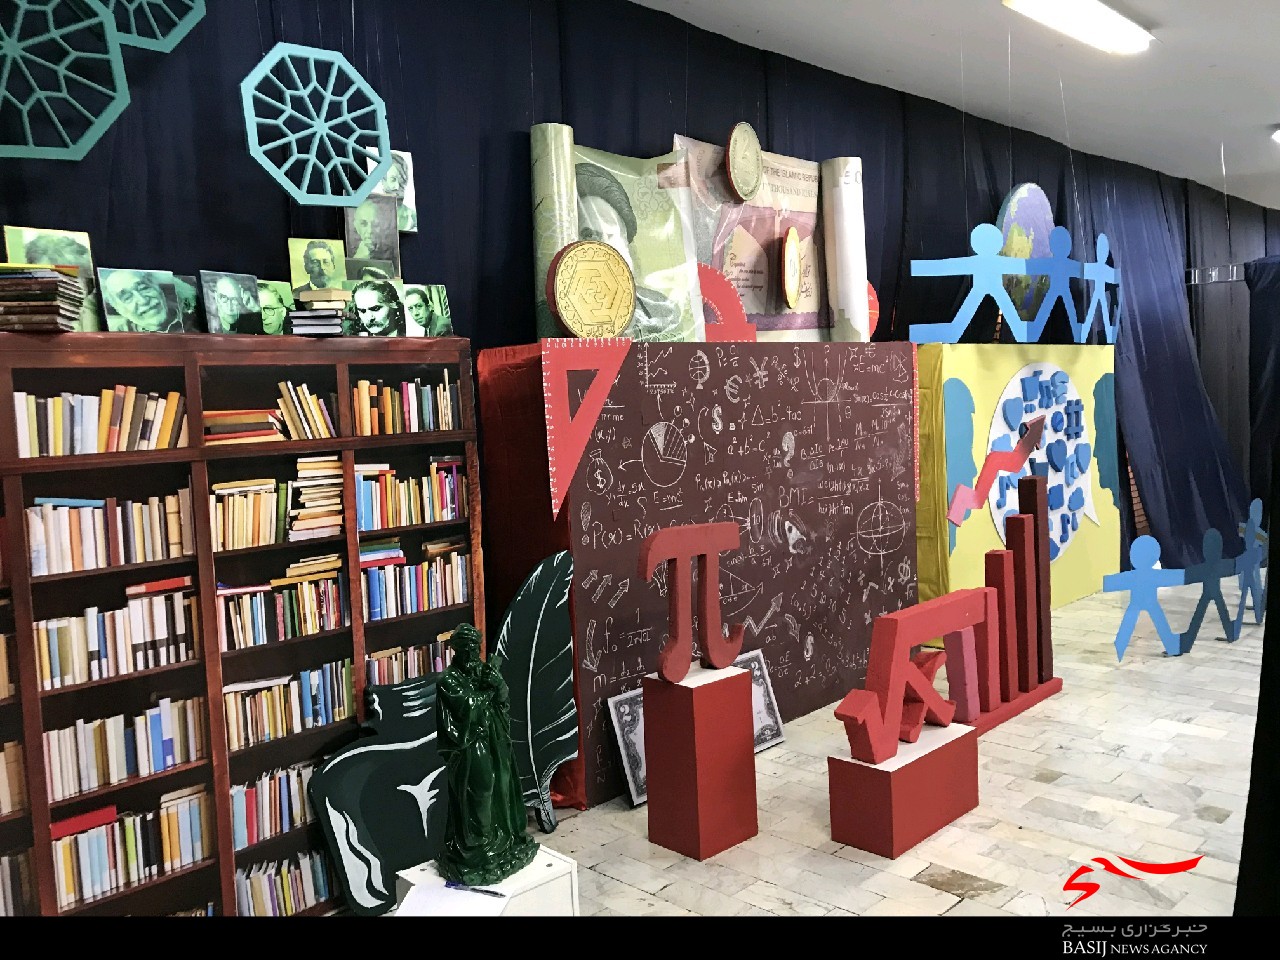 مدرسه ی کیفی آرمانی نه چندان دور/تئوری انتخاب فرصت دوباره برای انتخاب/جشنواره علمی مدرسه فرهنگ در پله شانزدهم